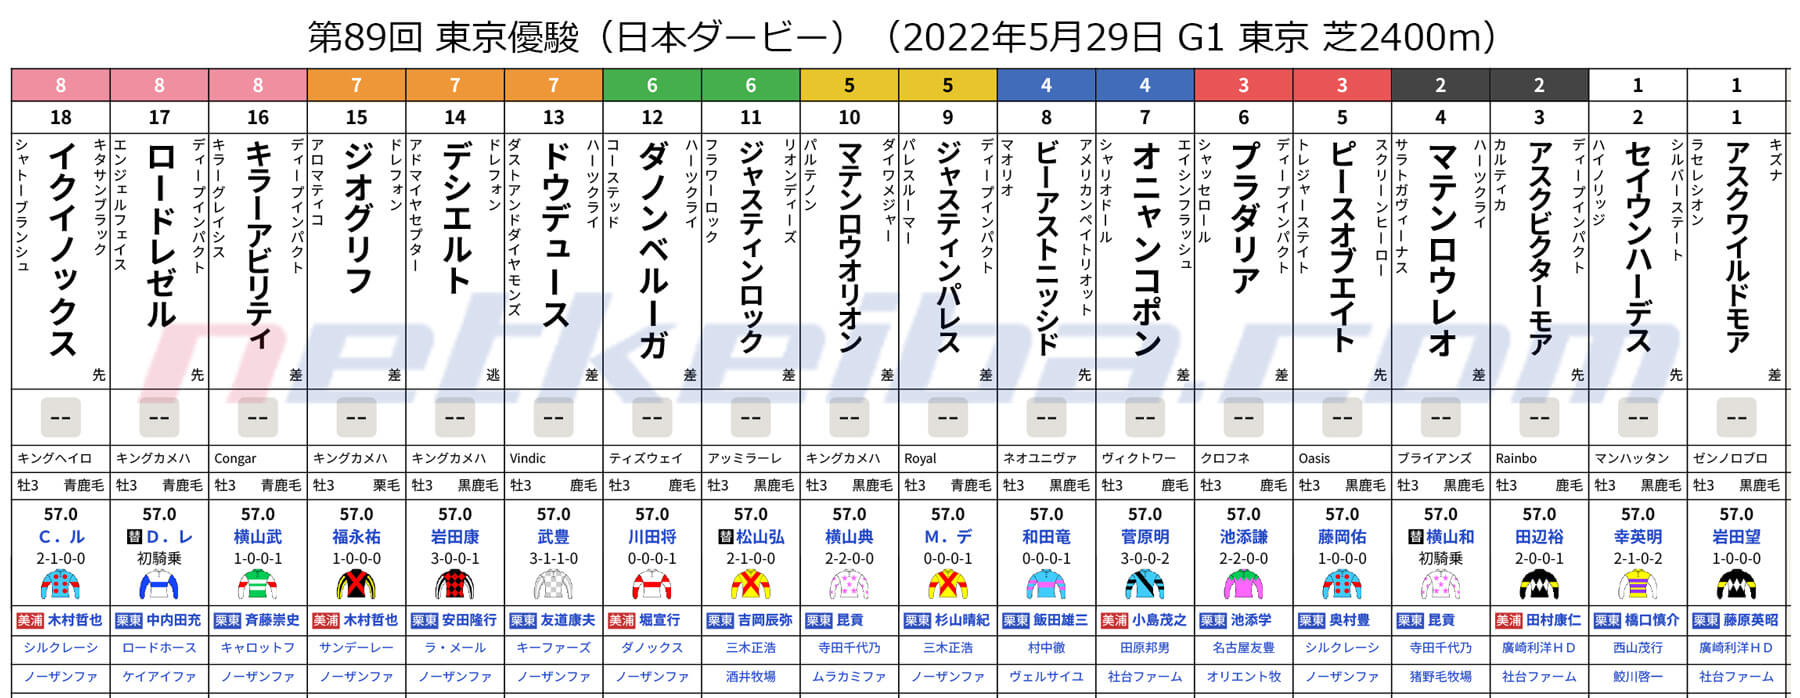 【日本ダービー2022枠順】ジオグリフは7枠15番、ドウデュースは7枠13番、イクイノックスは8枠18番